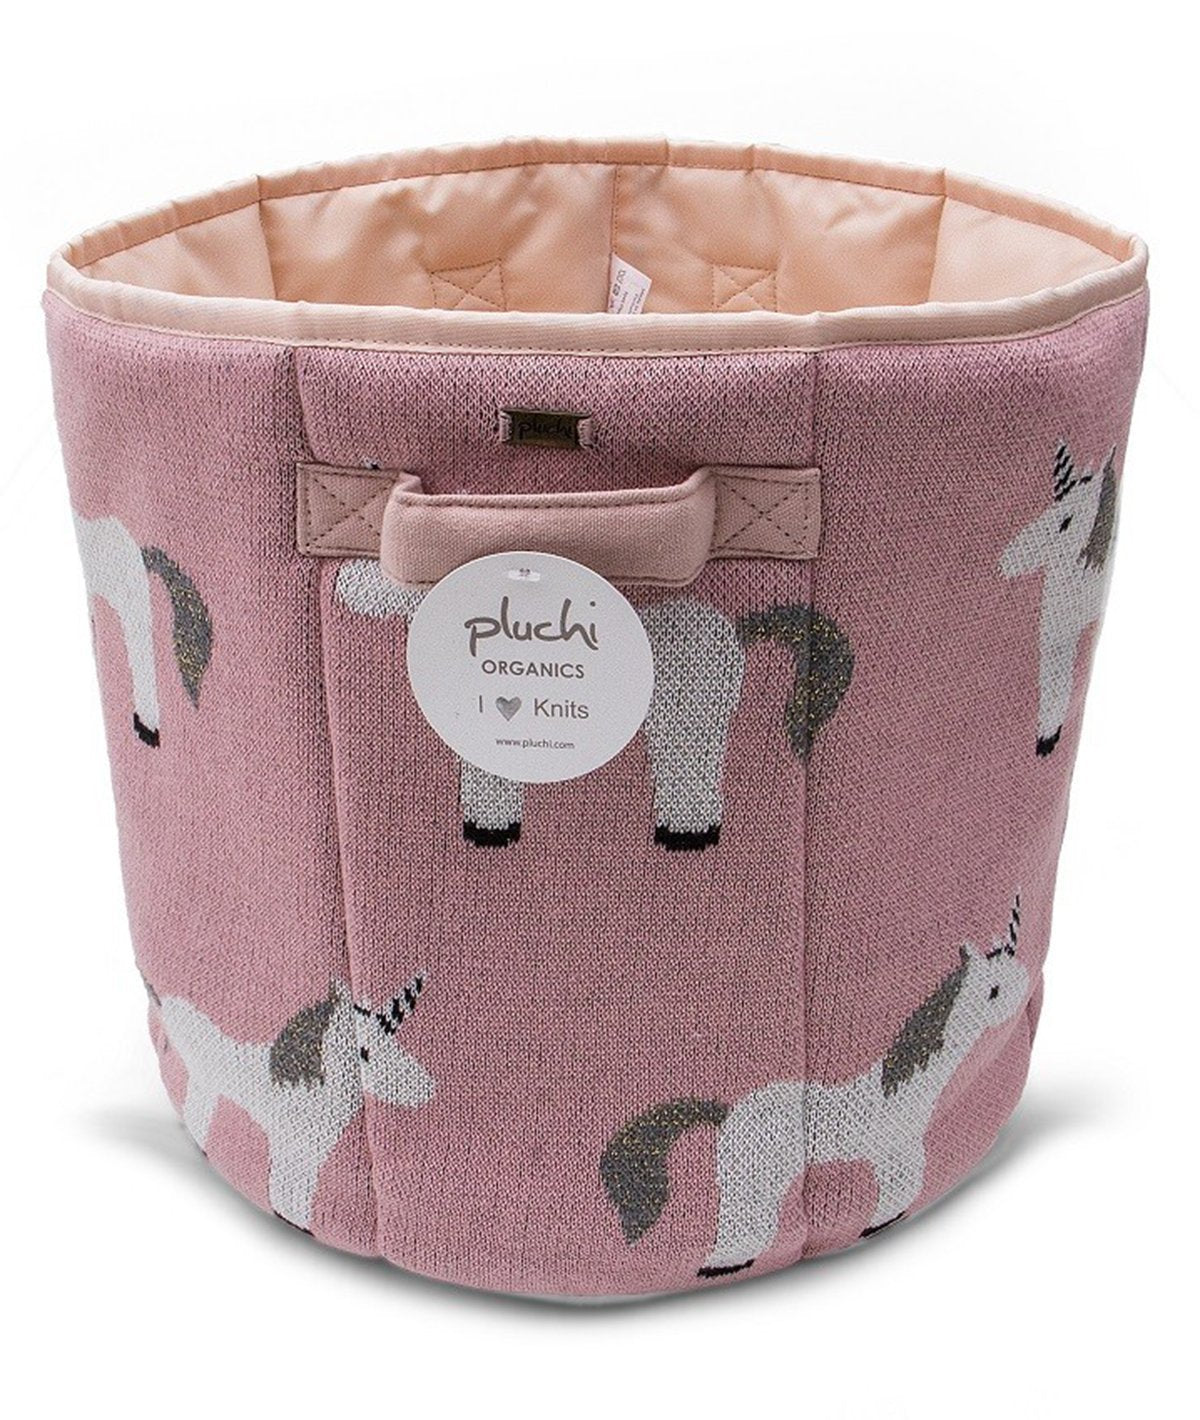 My Little Unicorn Bubblegum Pink Cotton Knitted Storage Basket for Kids Room / Nursery Decor